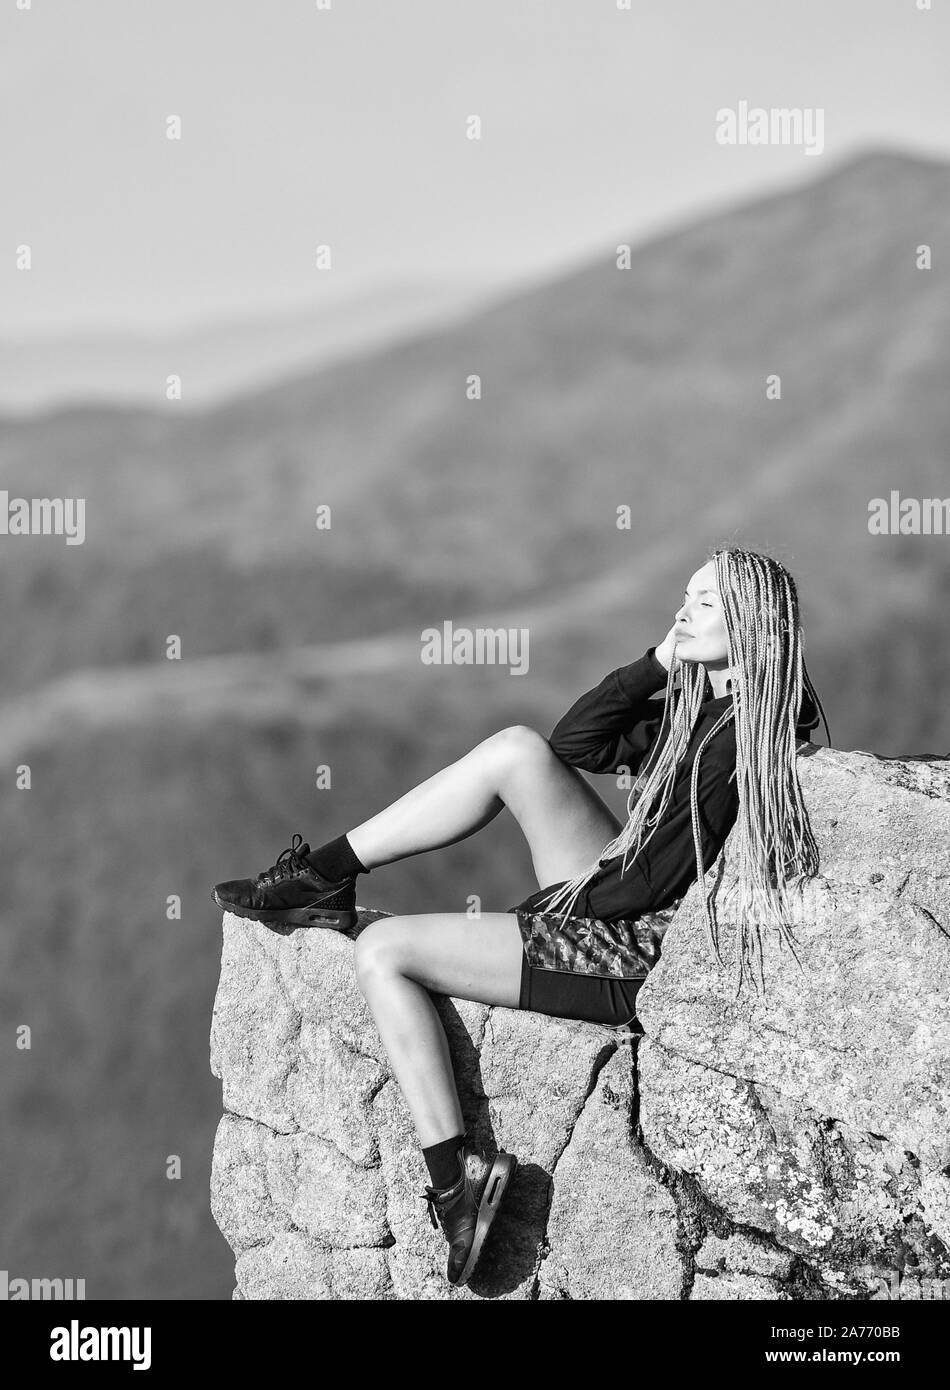 Extreme Konzept. Am Rande der Welt. Frau sitzen am Rand der Klippe in die hohen Berge Landschaft Hintergrund. Wandern ruhigen Moment. Genießen Sie die Aussicht. Touristische Wanderer Mädchen entspannende Kante Cliff. Gefährliche entspannen. Stockfoto